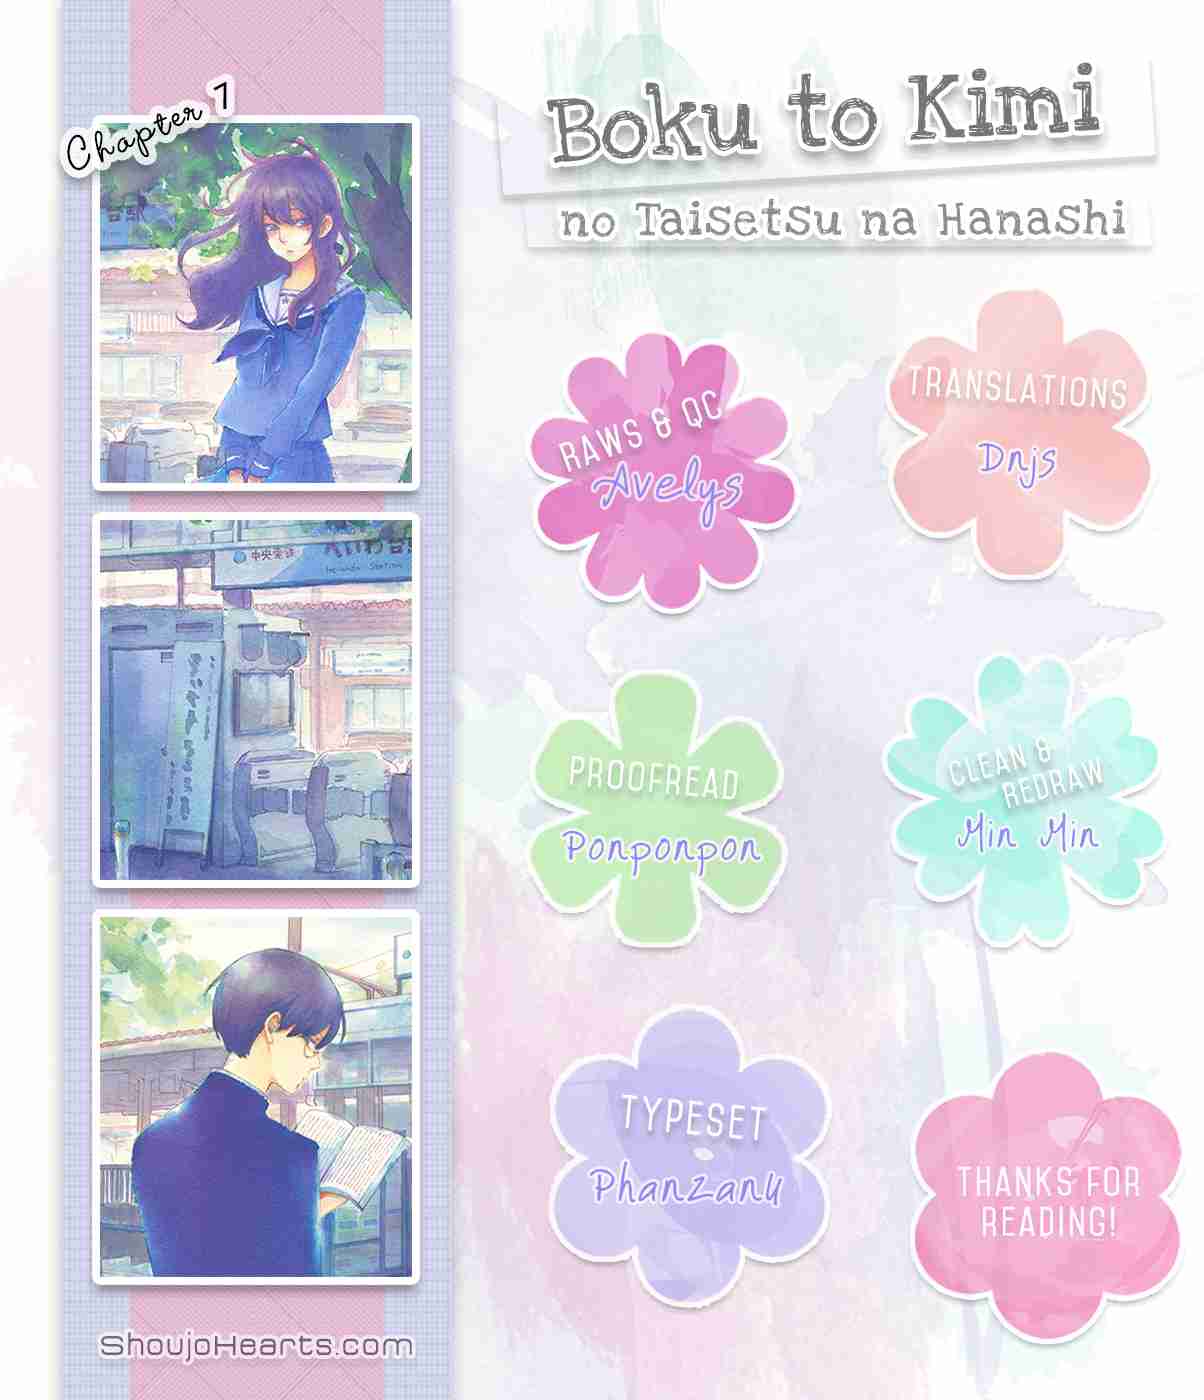 Boku to Kimi no Taisetsu na Hanashi Vol. 2 Ch. 7 Are They in Love?